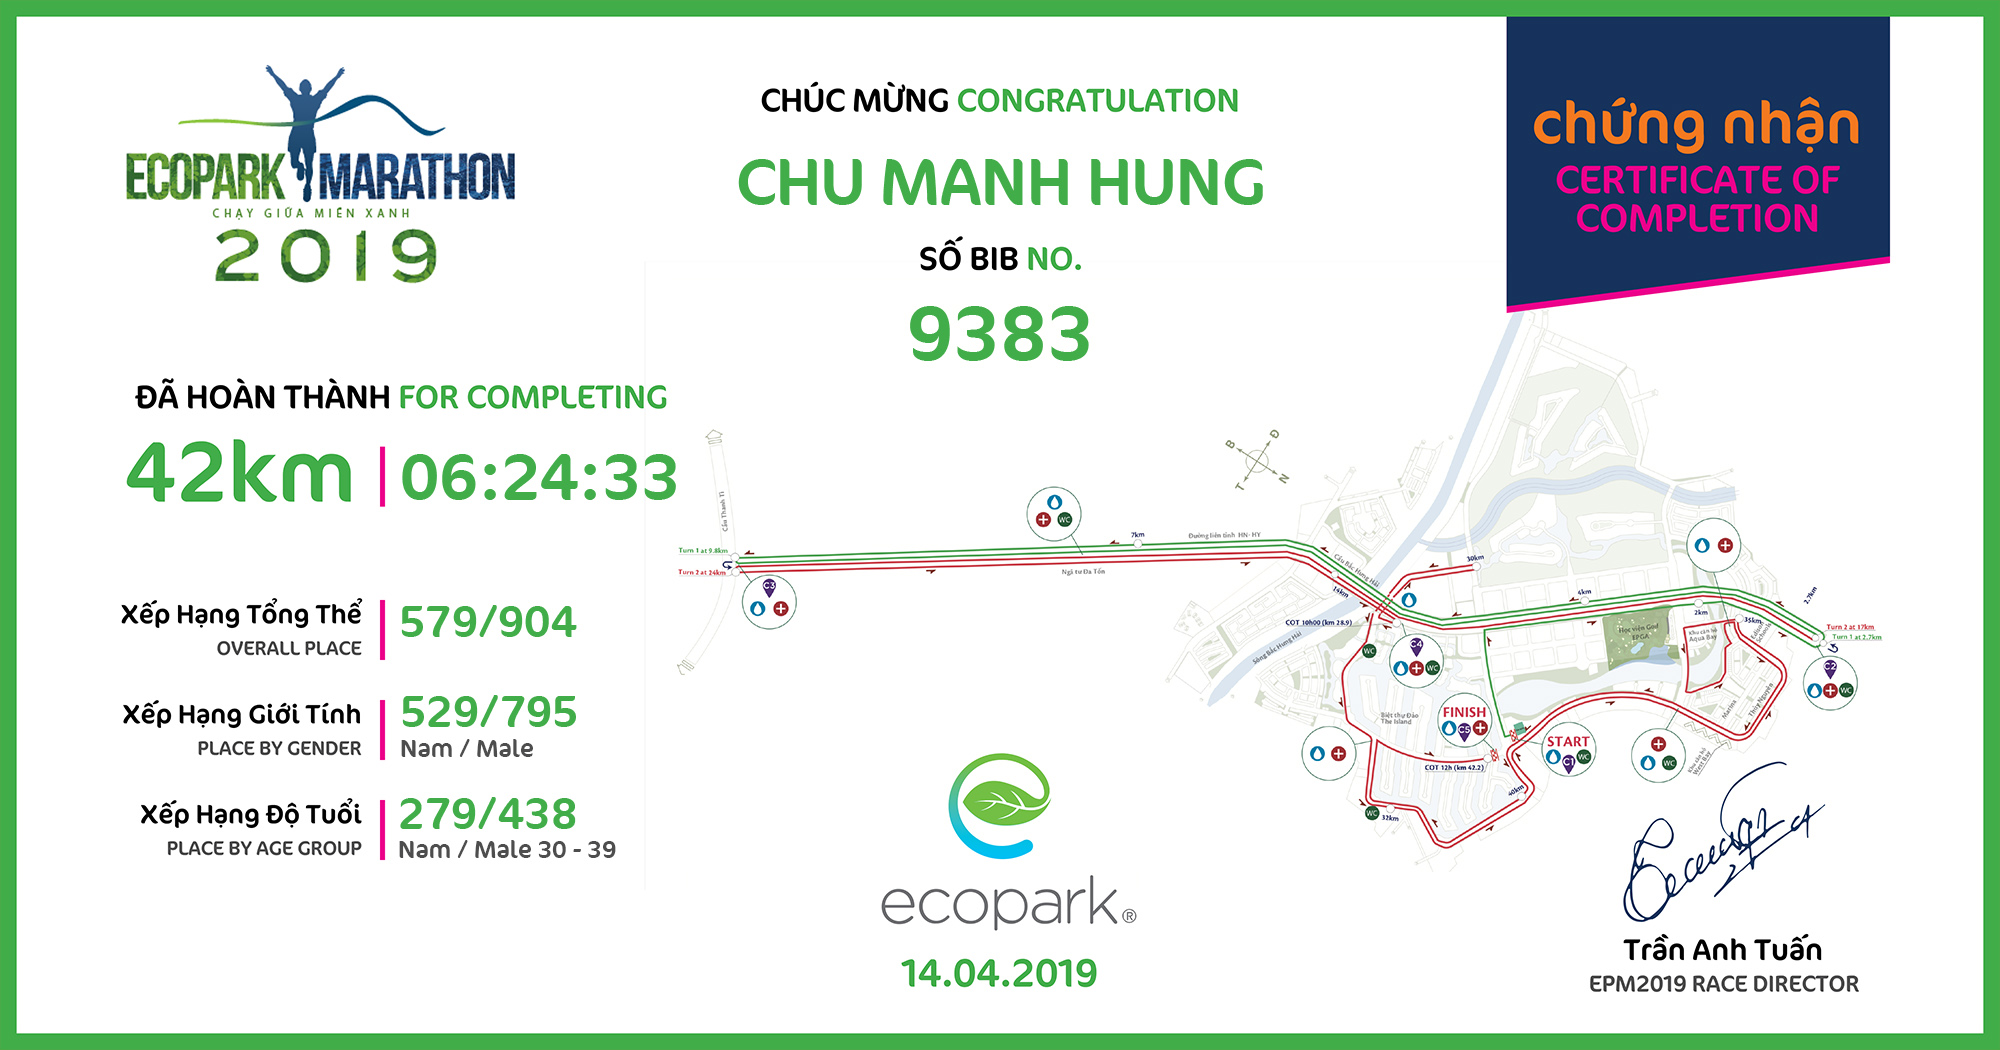 9383 - Chu Manh Hung